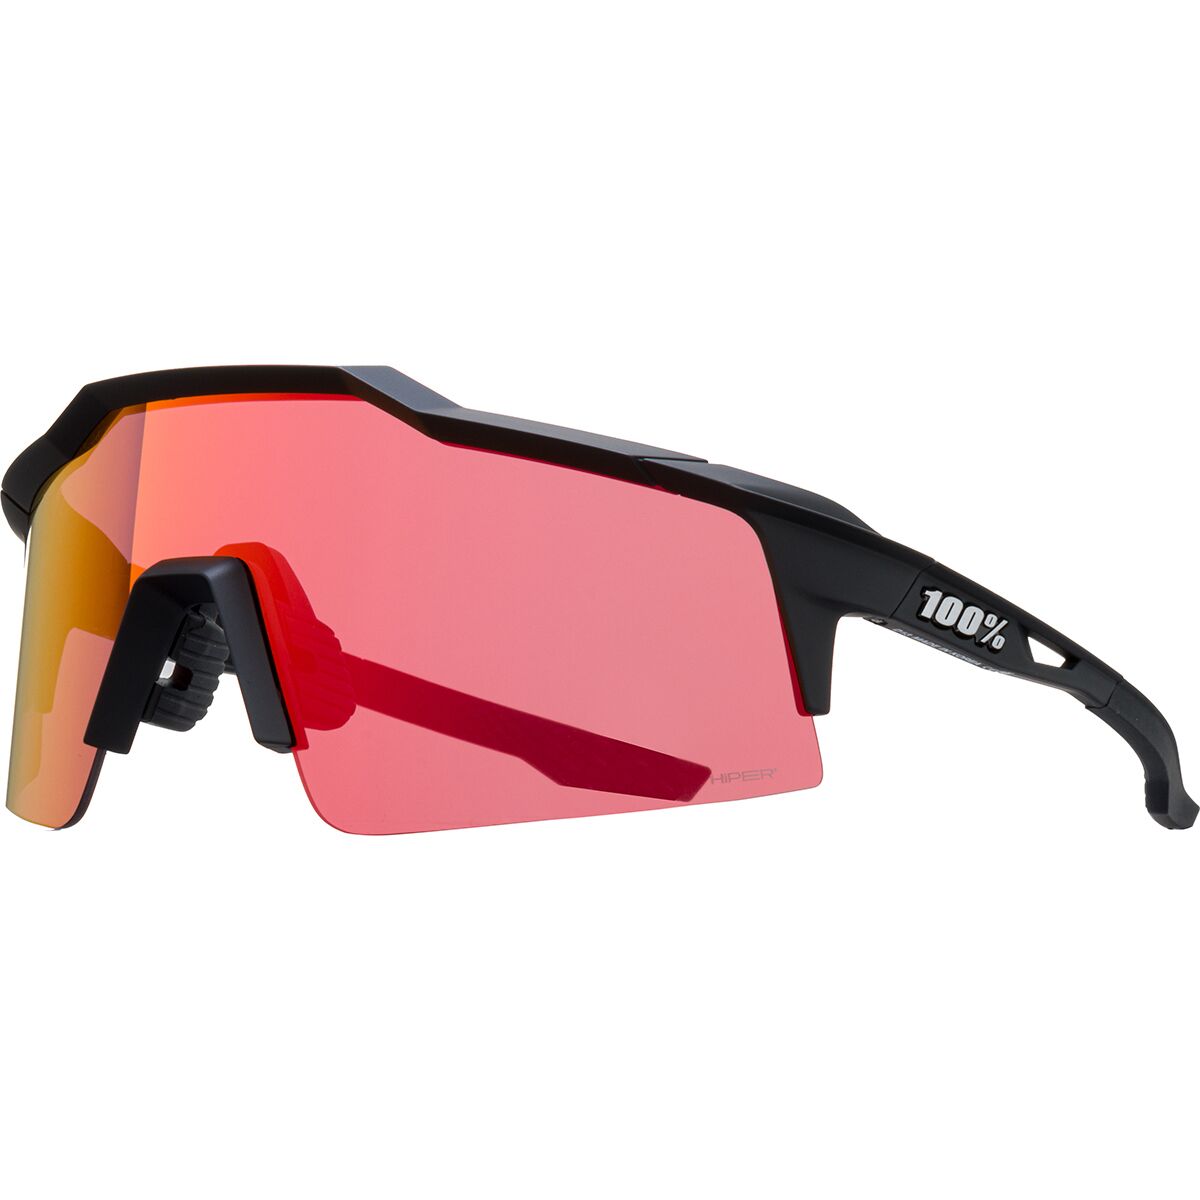 Солнцезащитные очки Speedcraft SL 100%